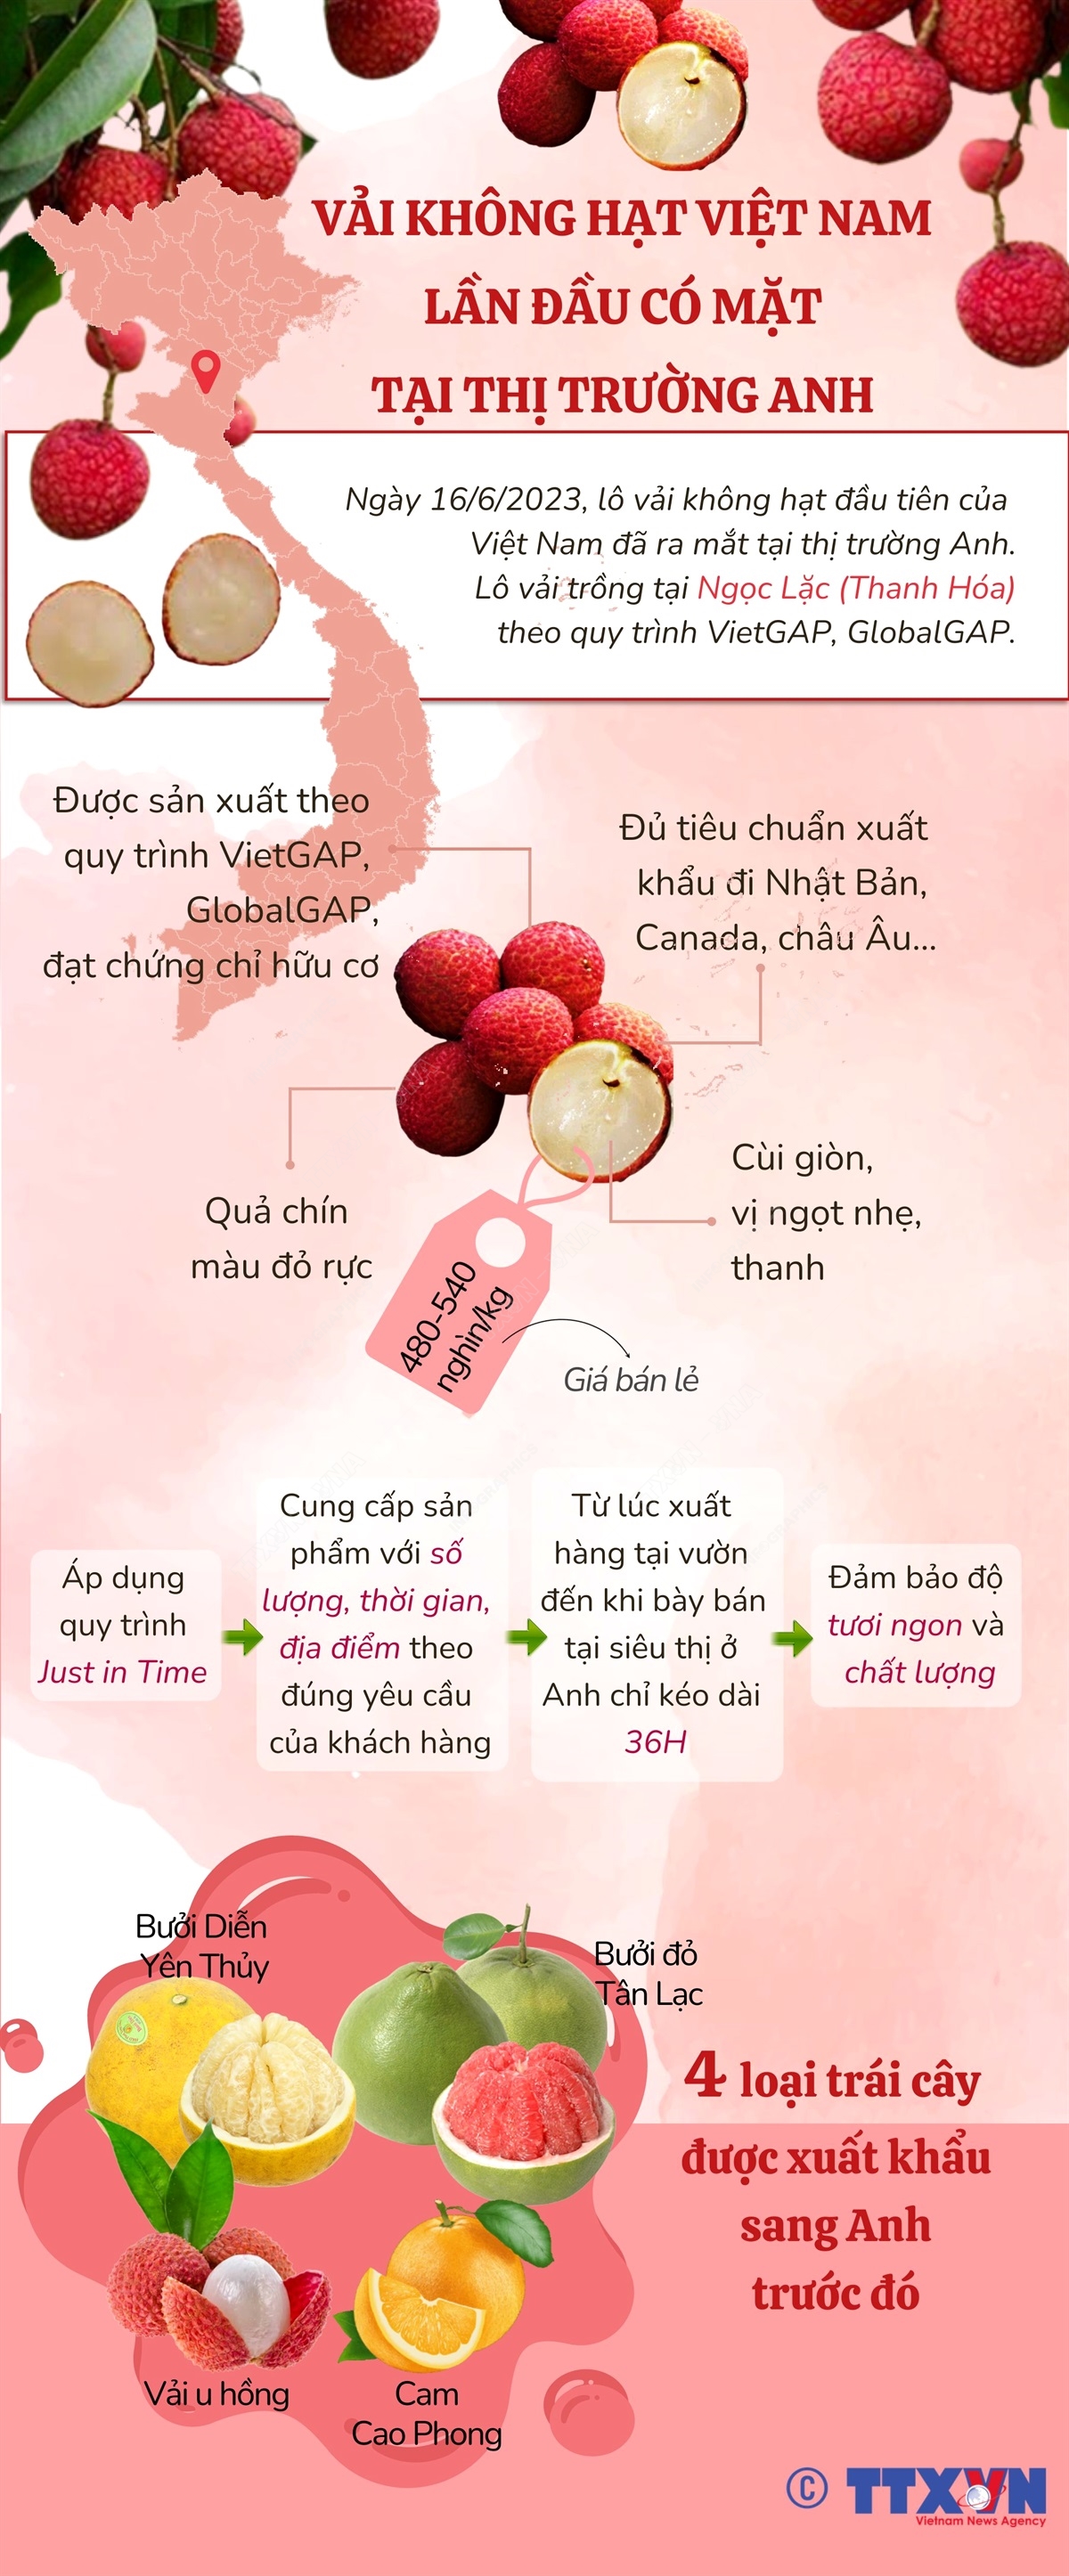 Các loại trái cây Việt Nam được xuất khẩu sang thị trường Anh - Ảnh 1.